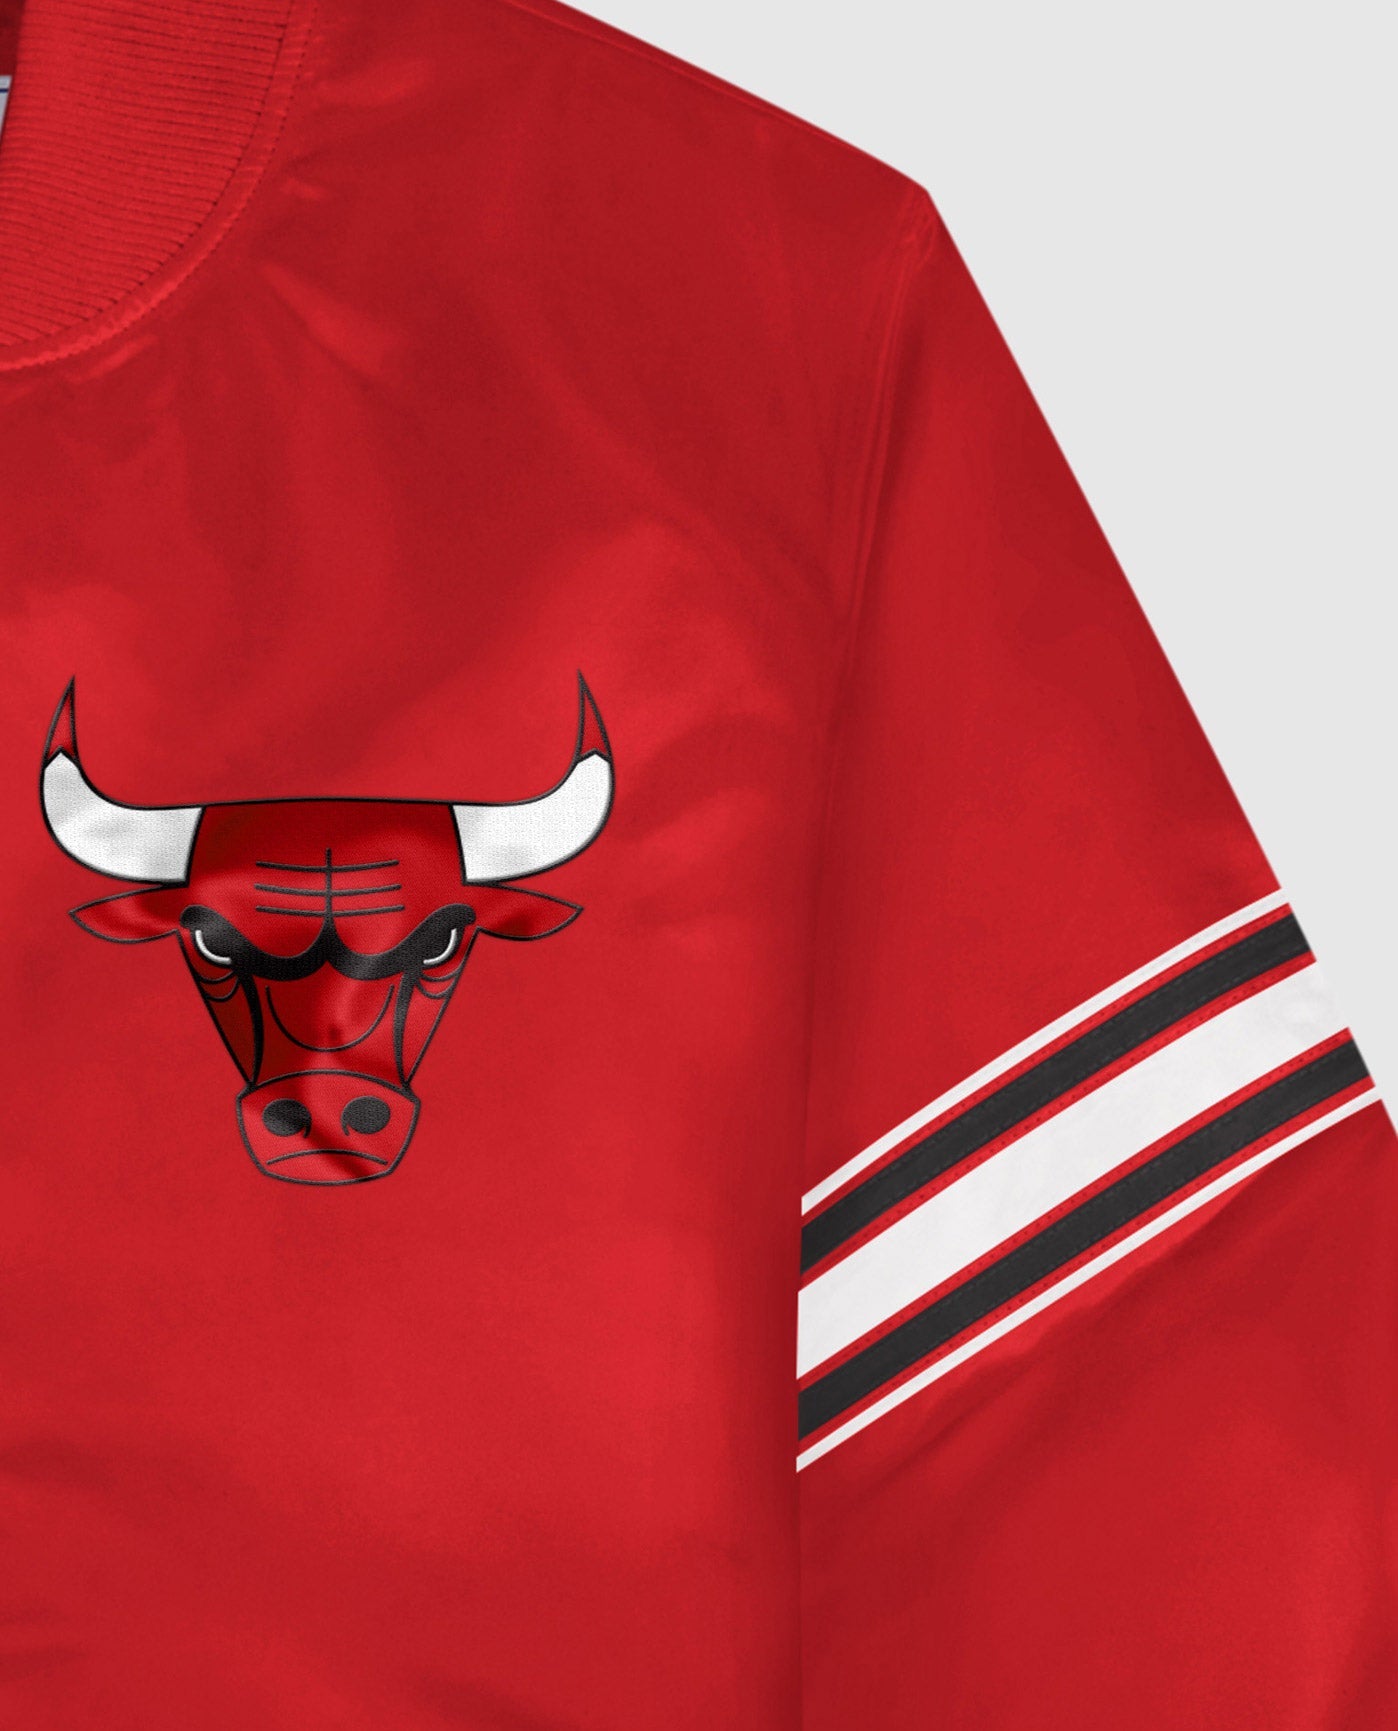 Starter Men's Chicago Bulls NBA Varsity Satin Red Jacket Red / S